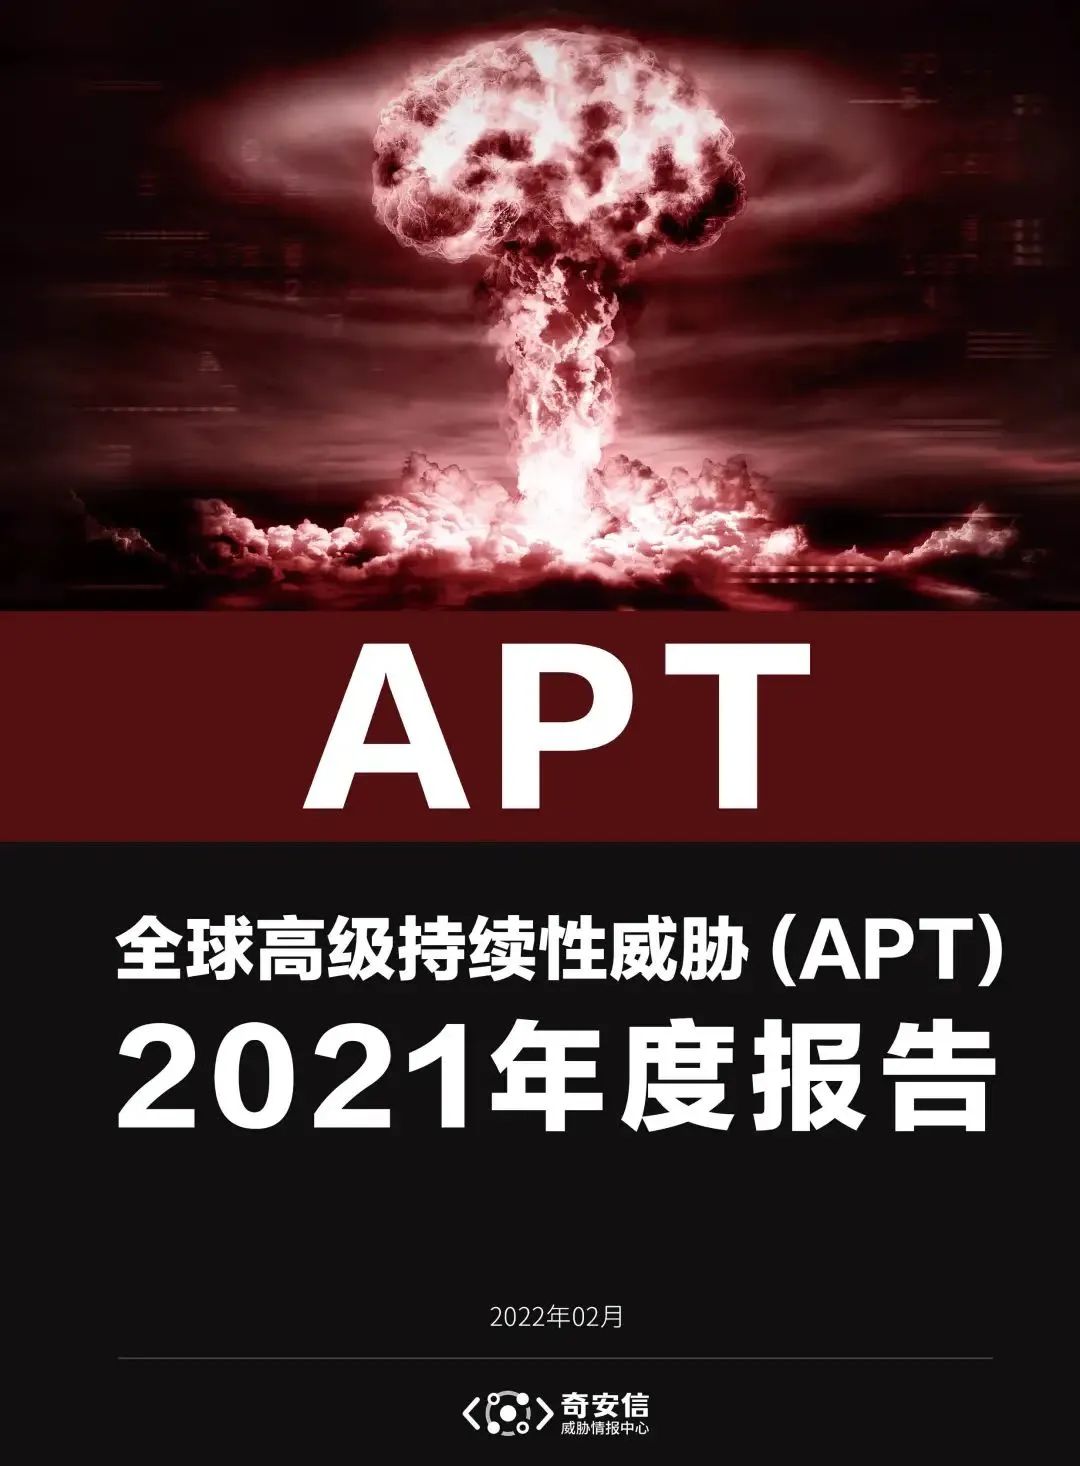 奇安信发布2021年APT报告 0day漏洞已成为常规武器